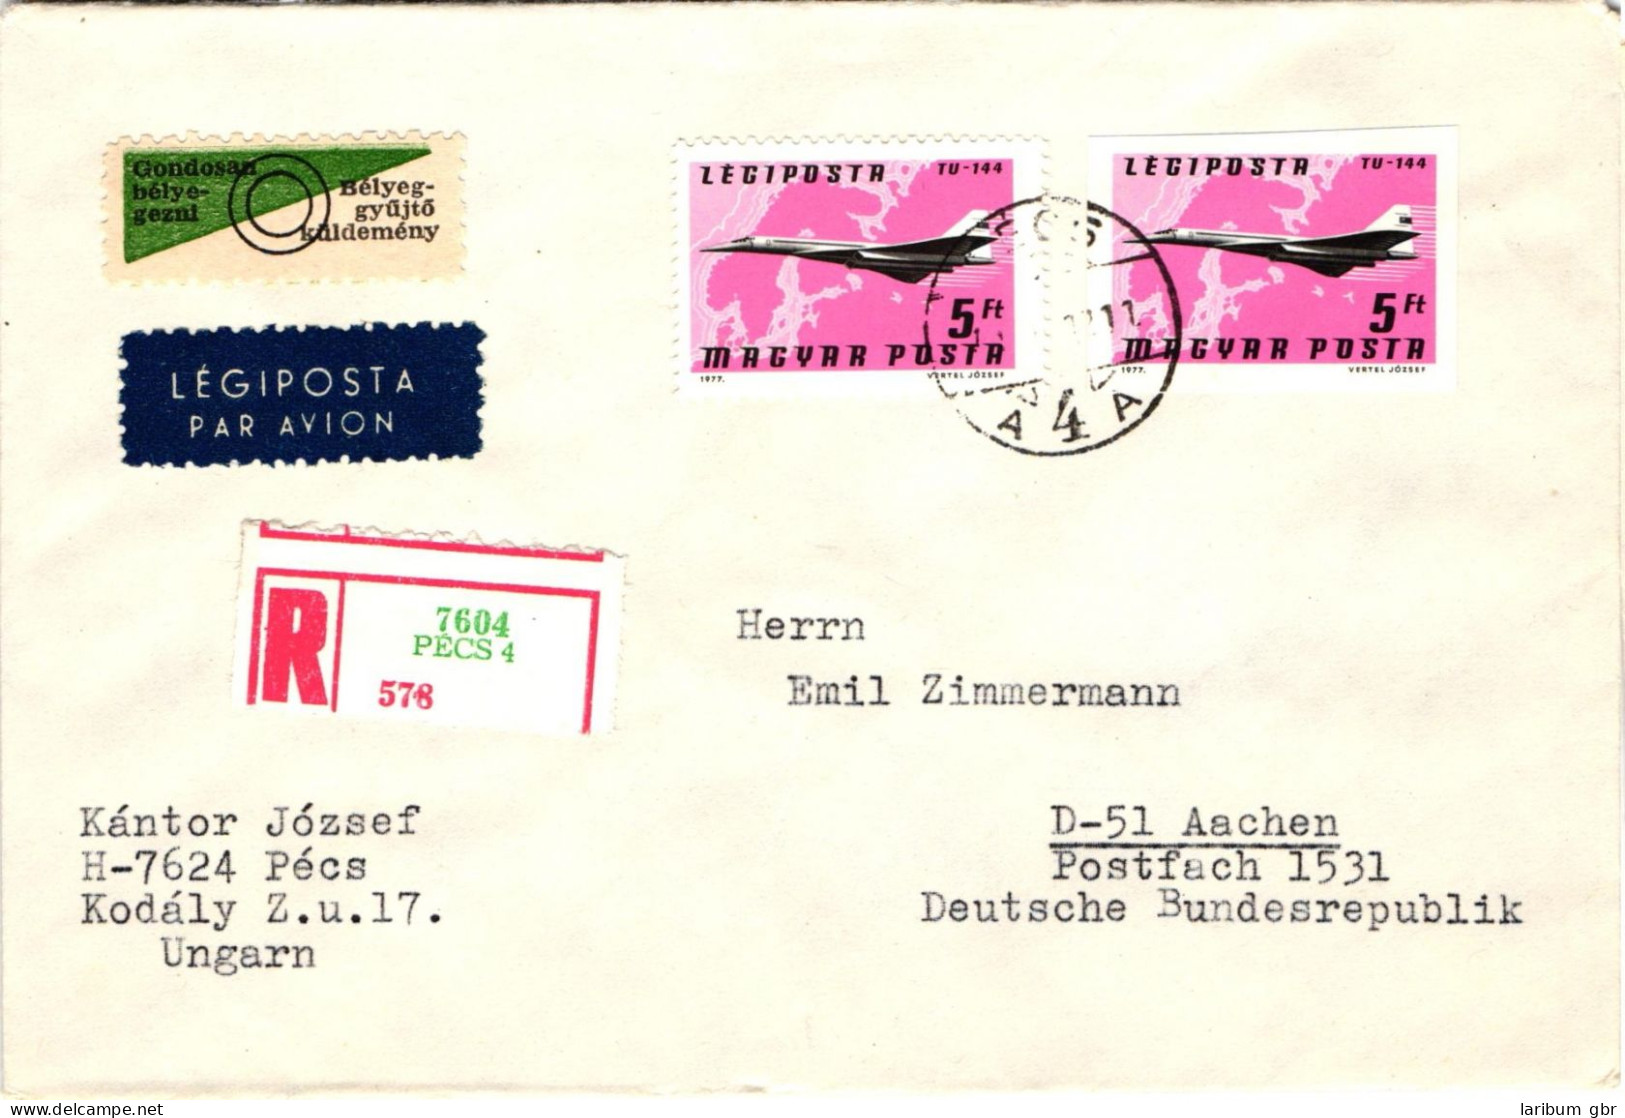 Ungarn 3222-29 A/B verteilt auf 8 Briefe als Einschreiben nach Aachen #JD101